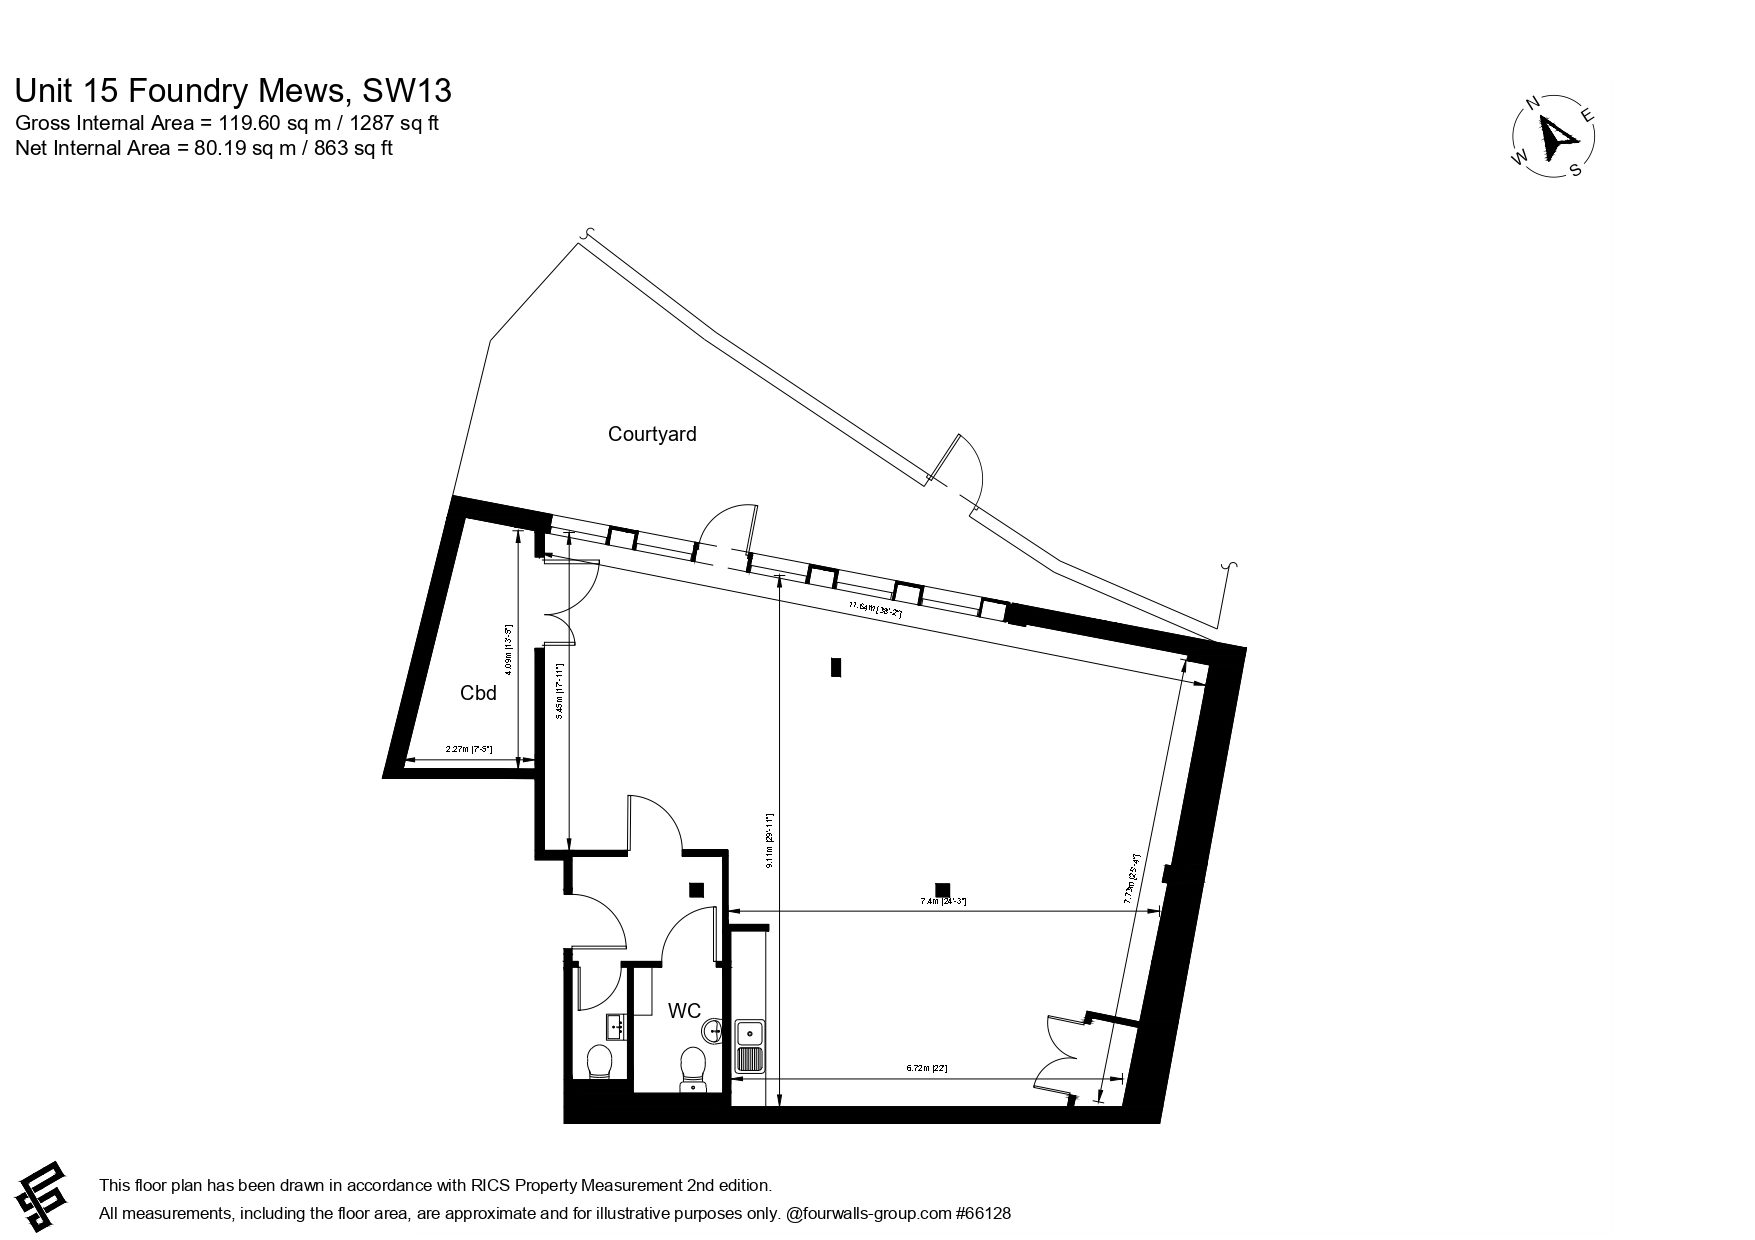 Unit 15 NIA floor plan page 0001